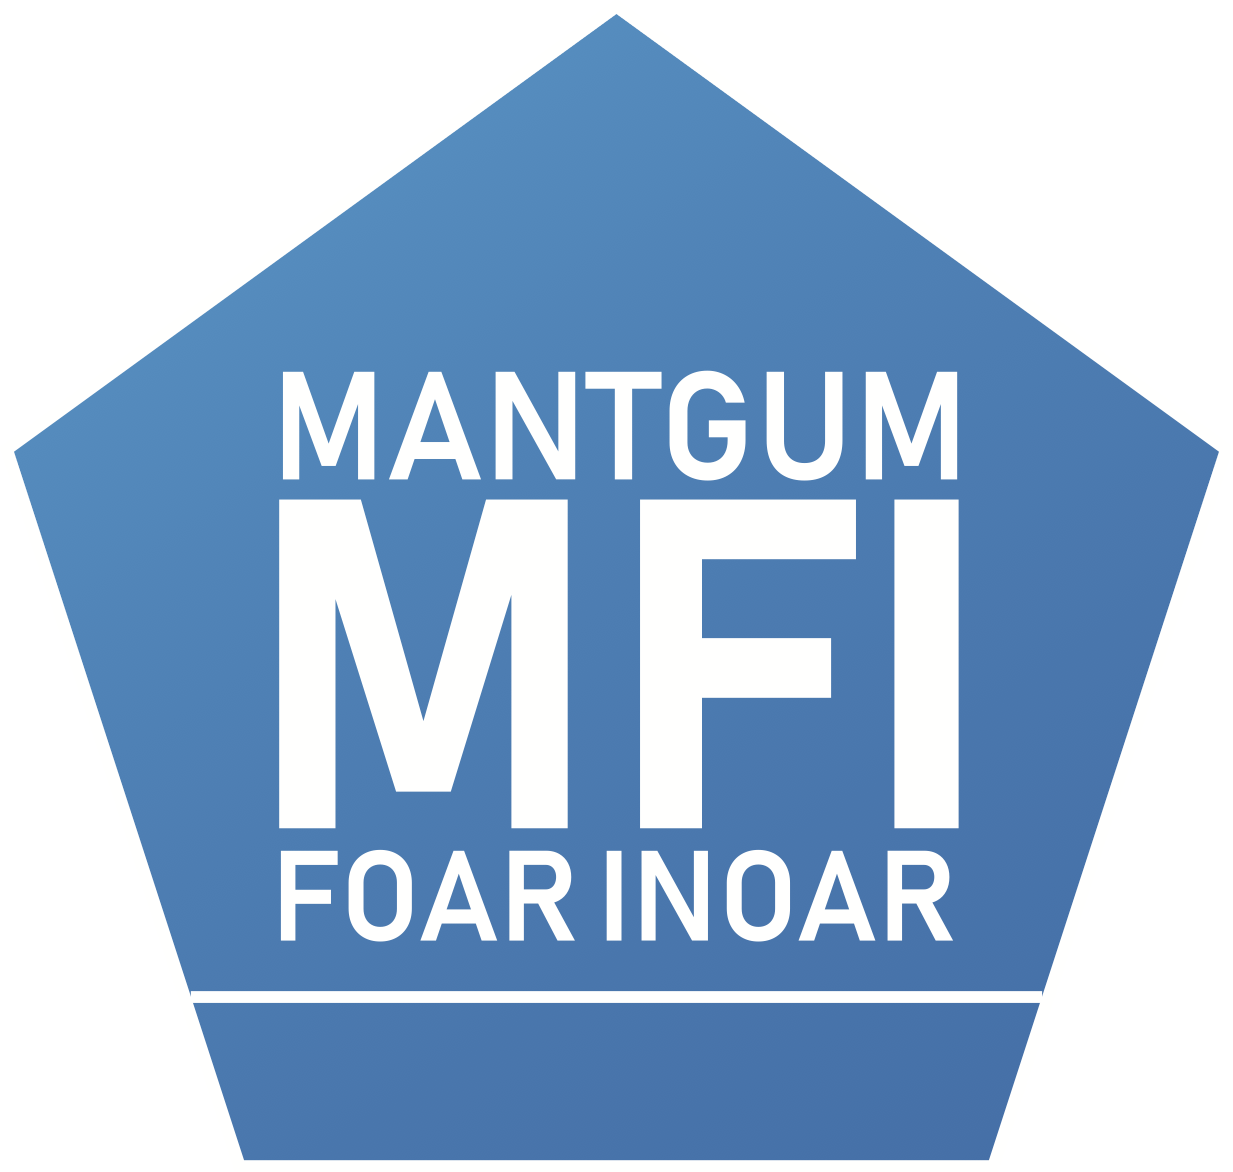 NwMantgum Foar Inoar Logo met witte rand